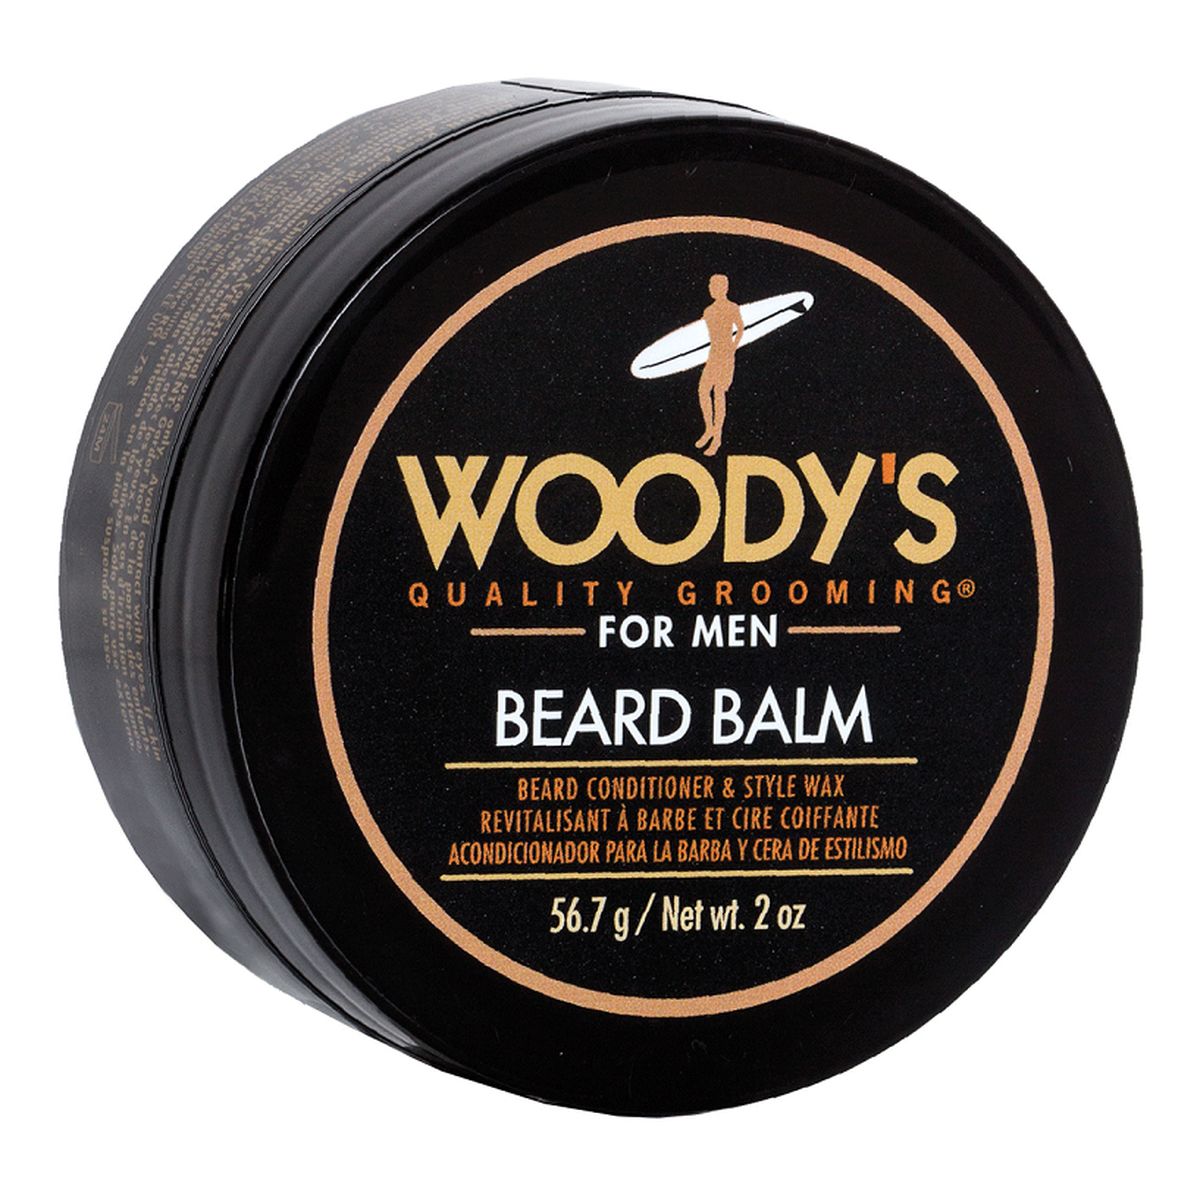 Woody’s Beard Balm odżywczy Balsam do brody 56.7g